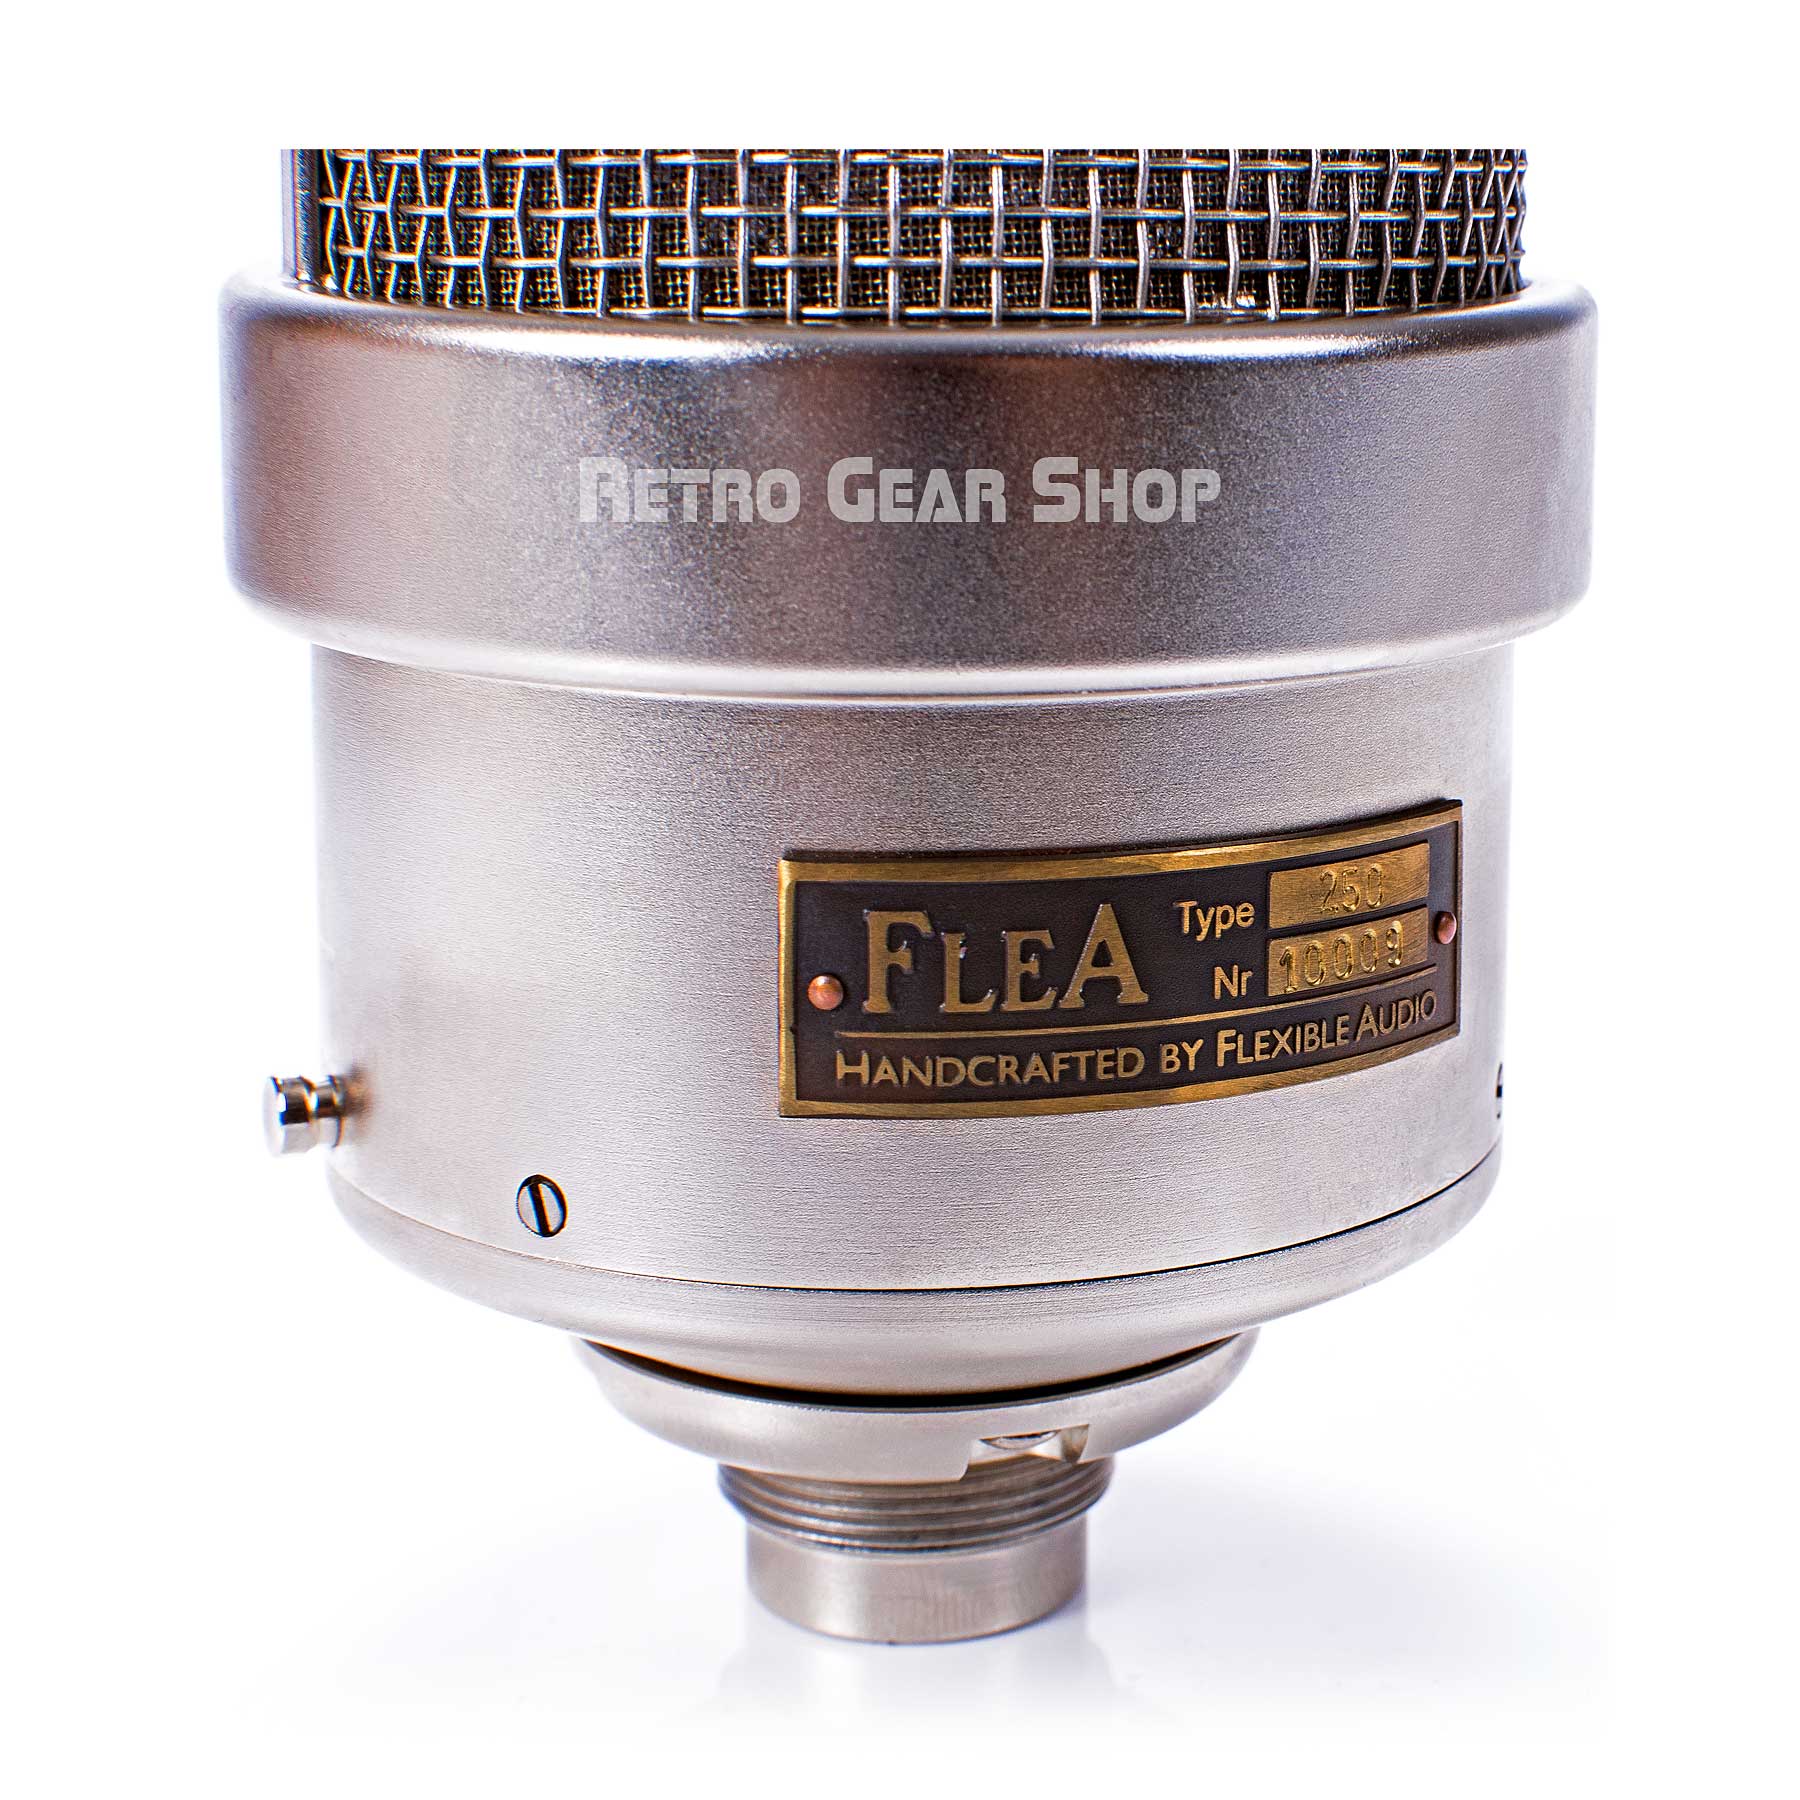 FLEA Microphones 250 Serial Number